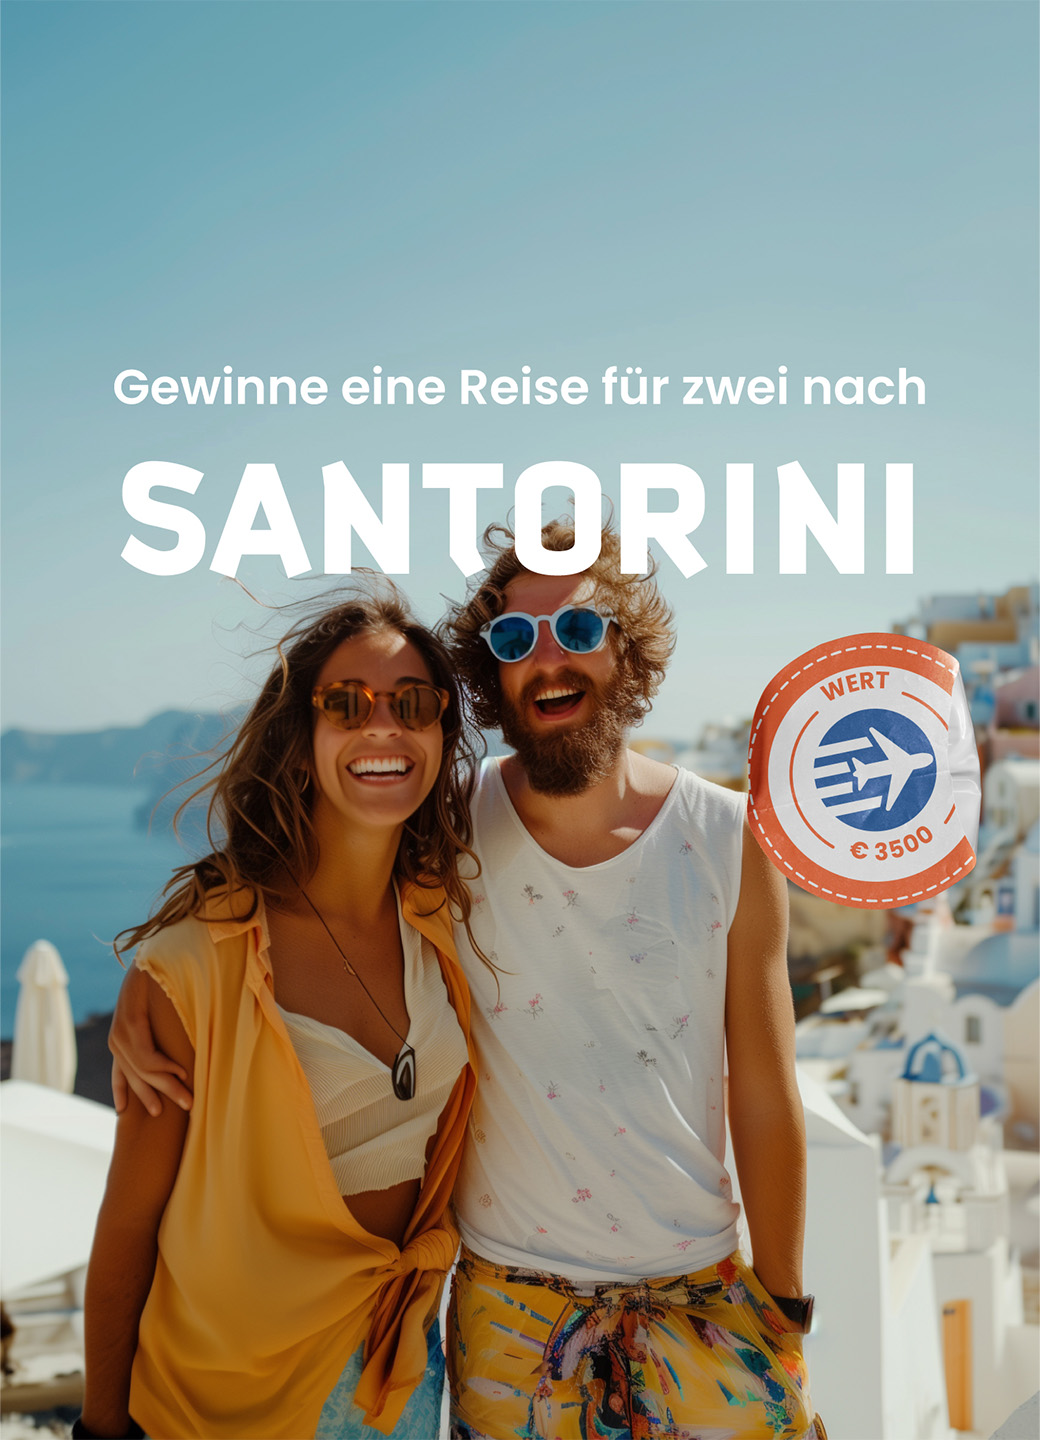 Ein Paar in Santorini